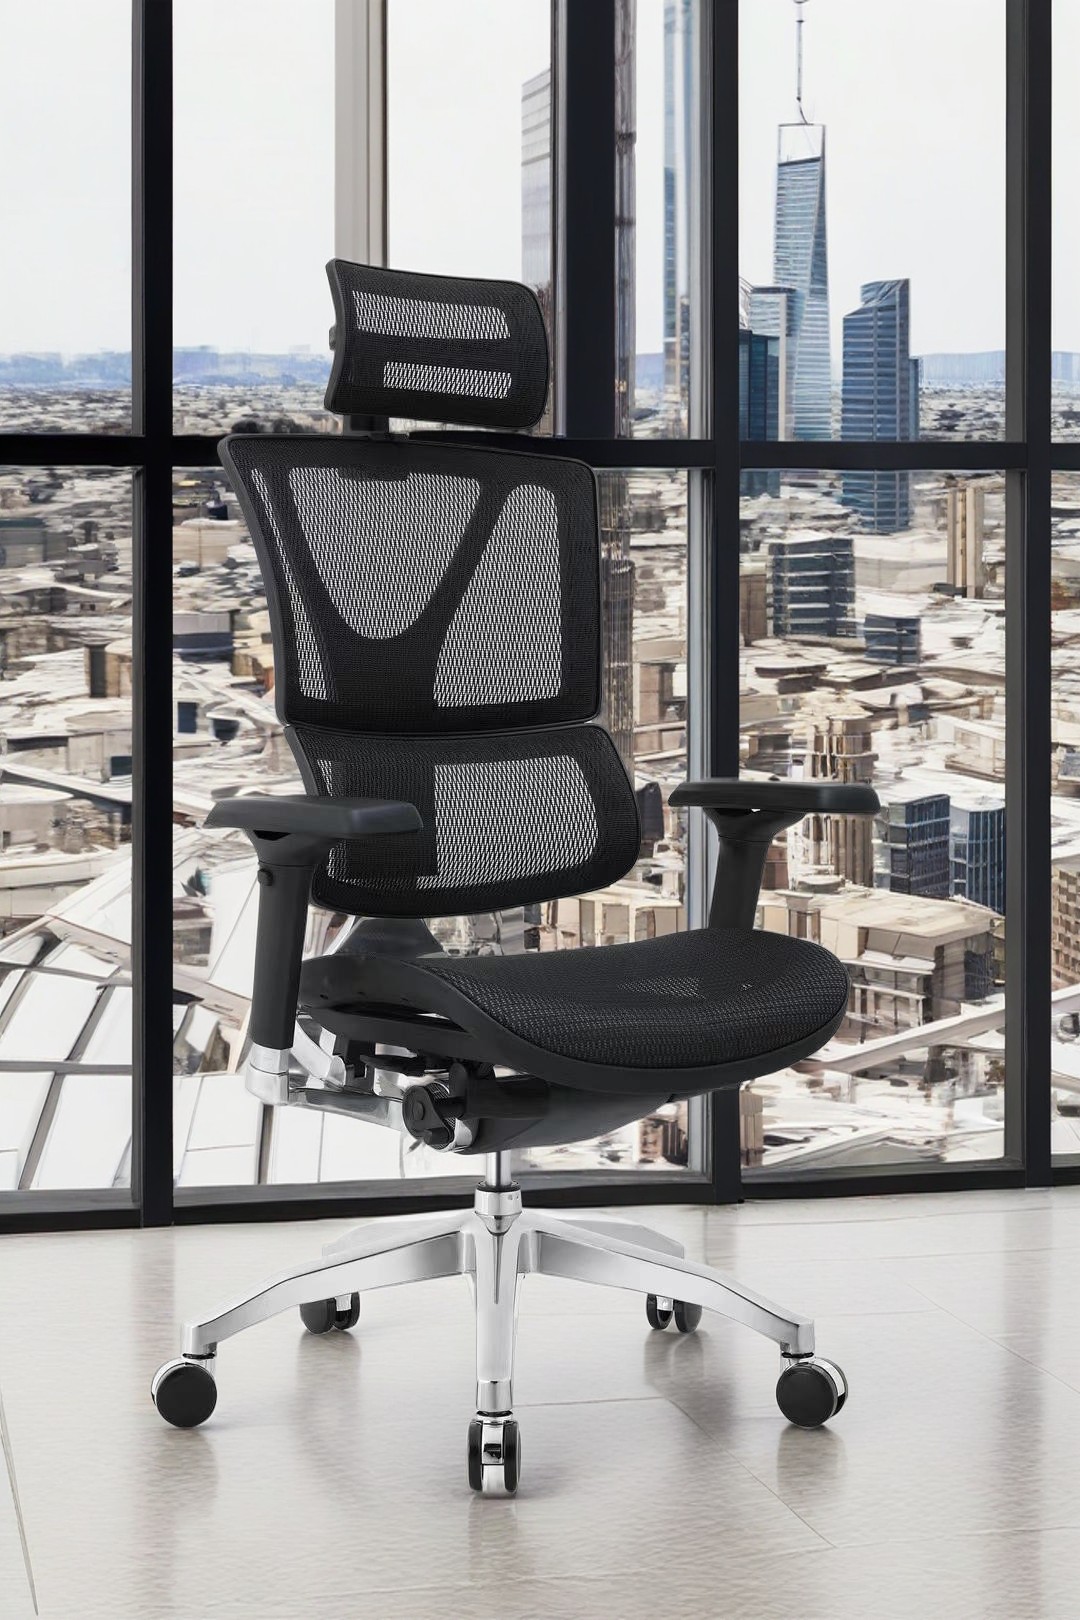 Ergonomic chair egronomic chair ergonomic office chair